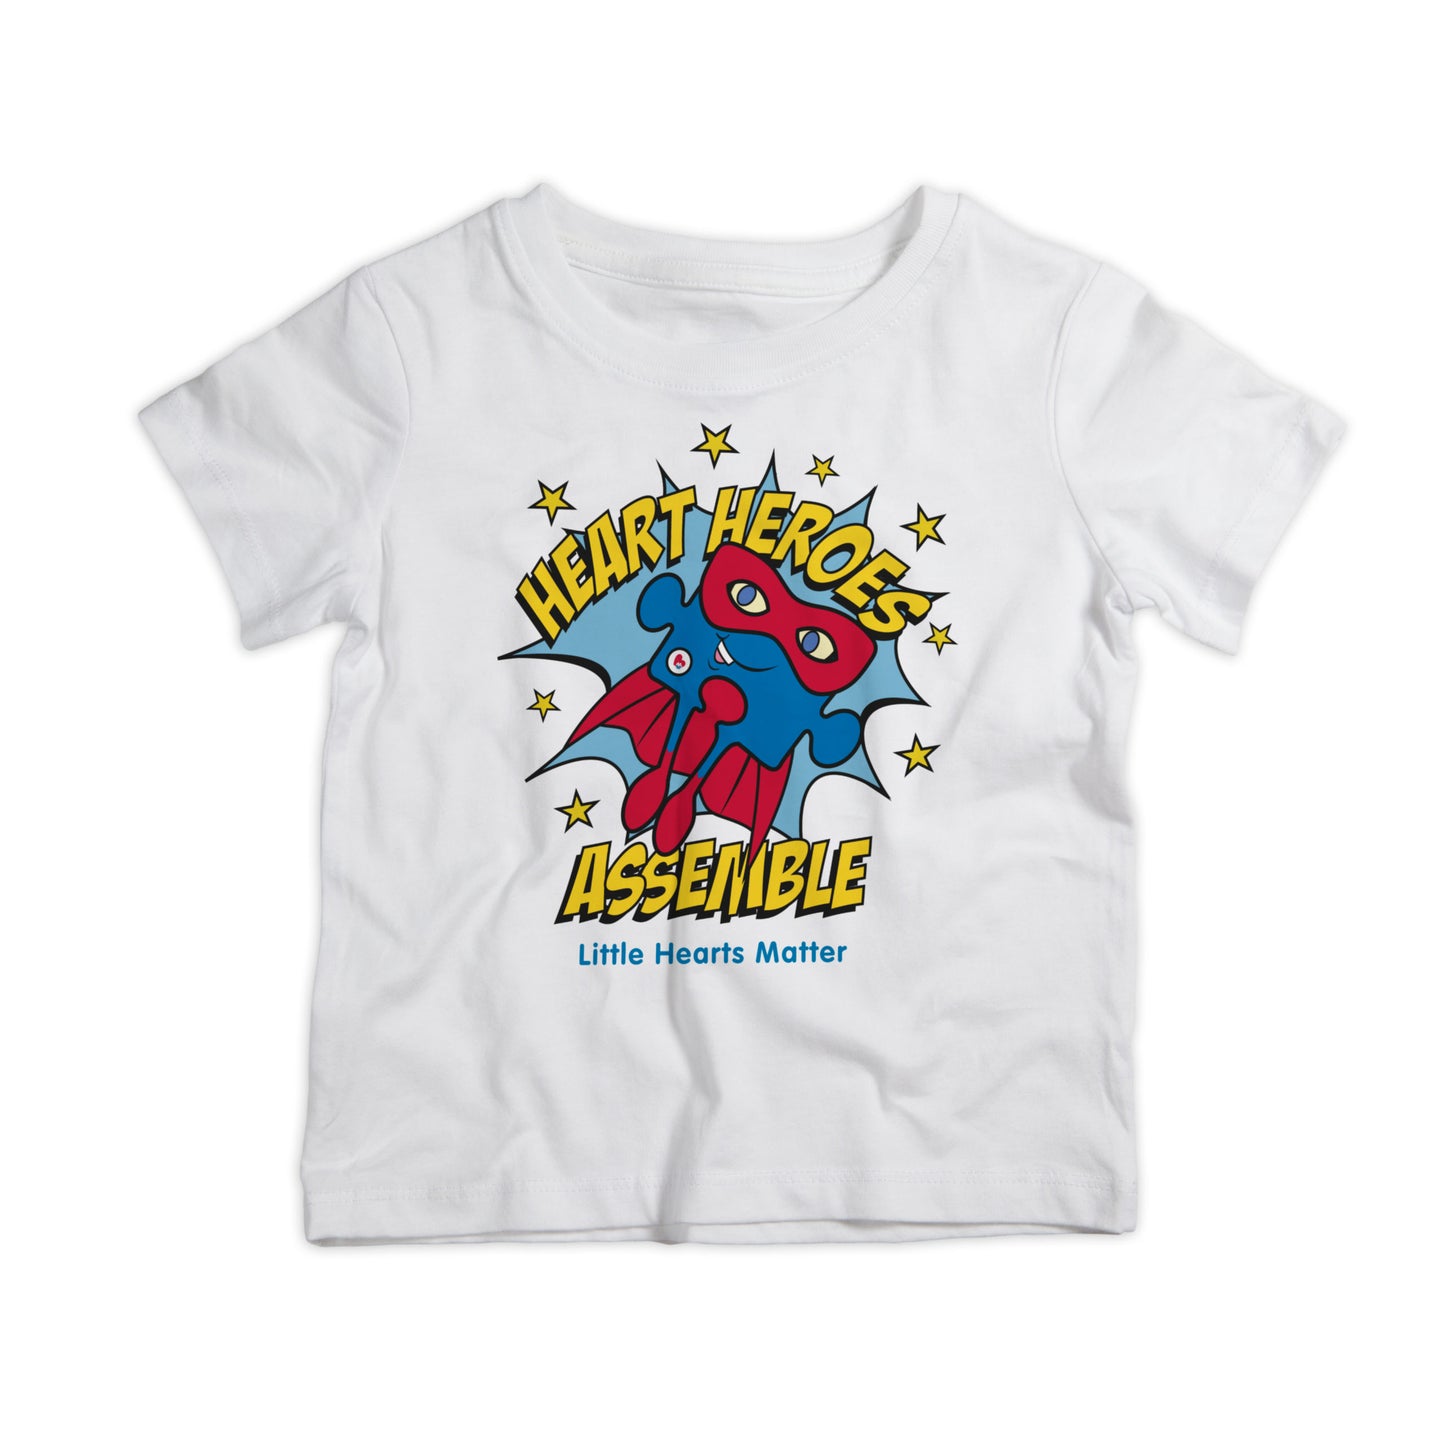 Heart Heroes Assemble! Children's T-Shirt